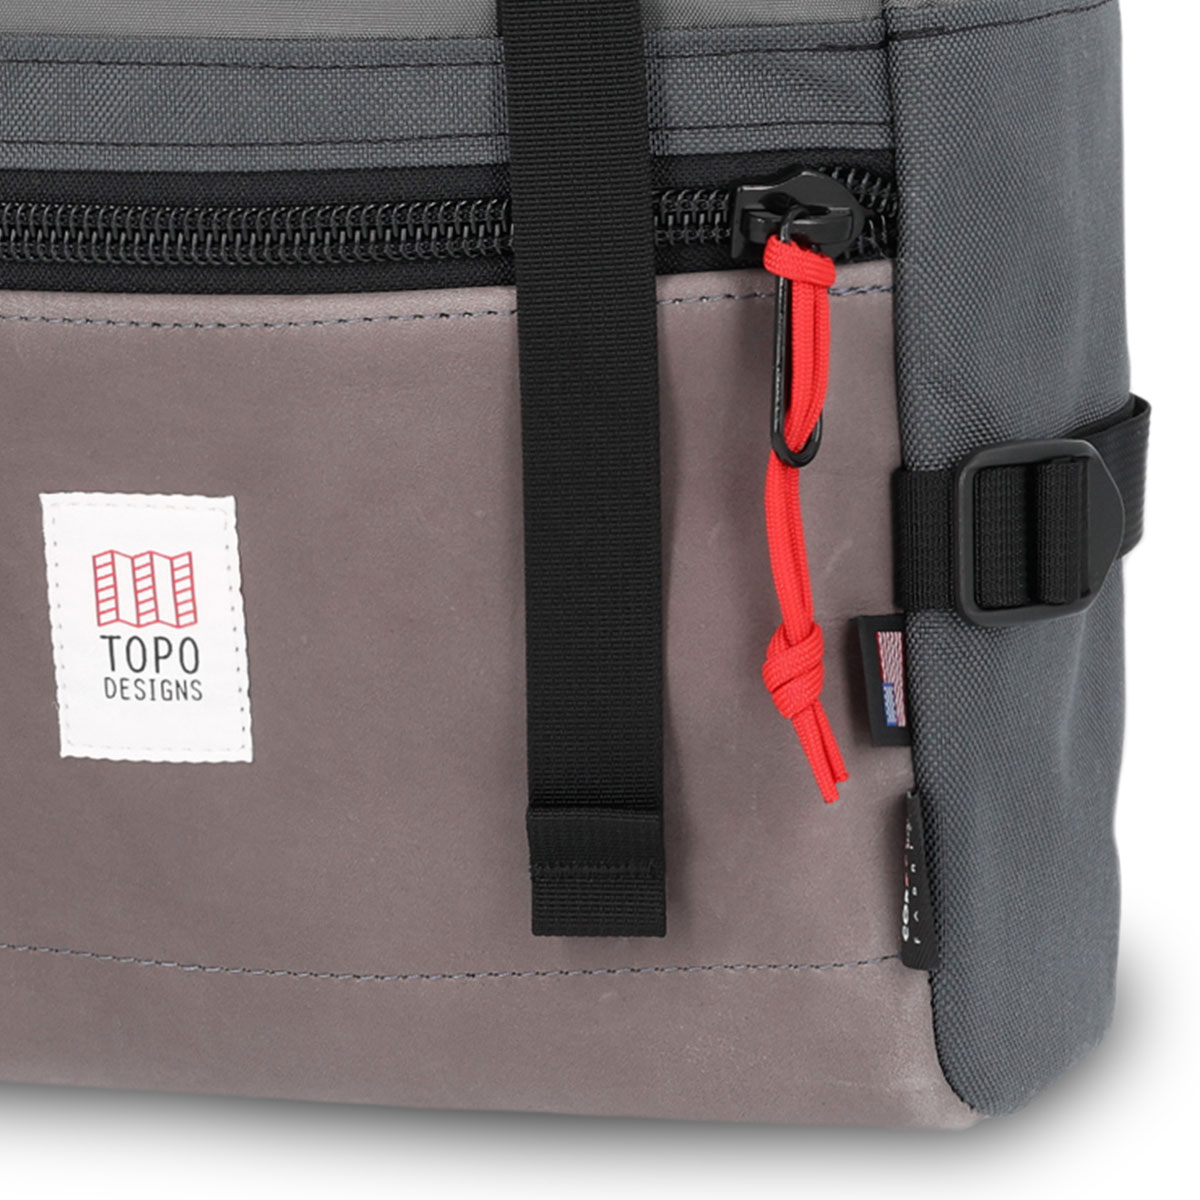 Topo Designs Rover Pack Leather Charcoal/Charcoal Leather, tijdloze rugzak met moderne functionaliteiten voor dagelijks gebruik